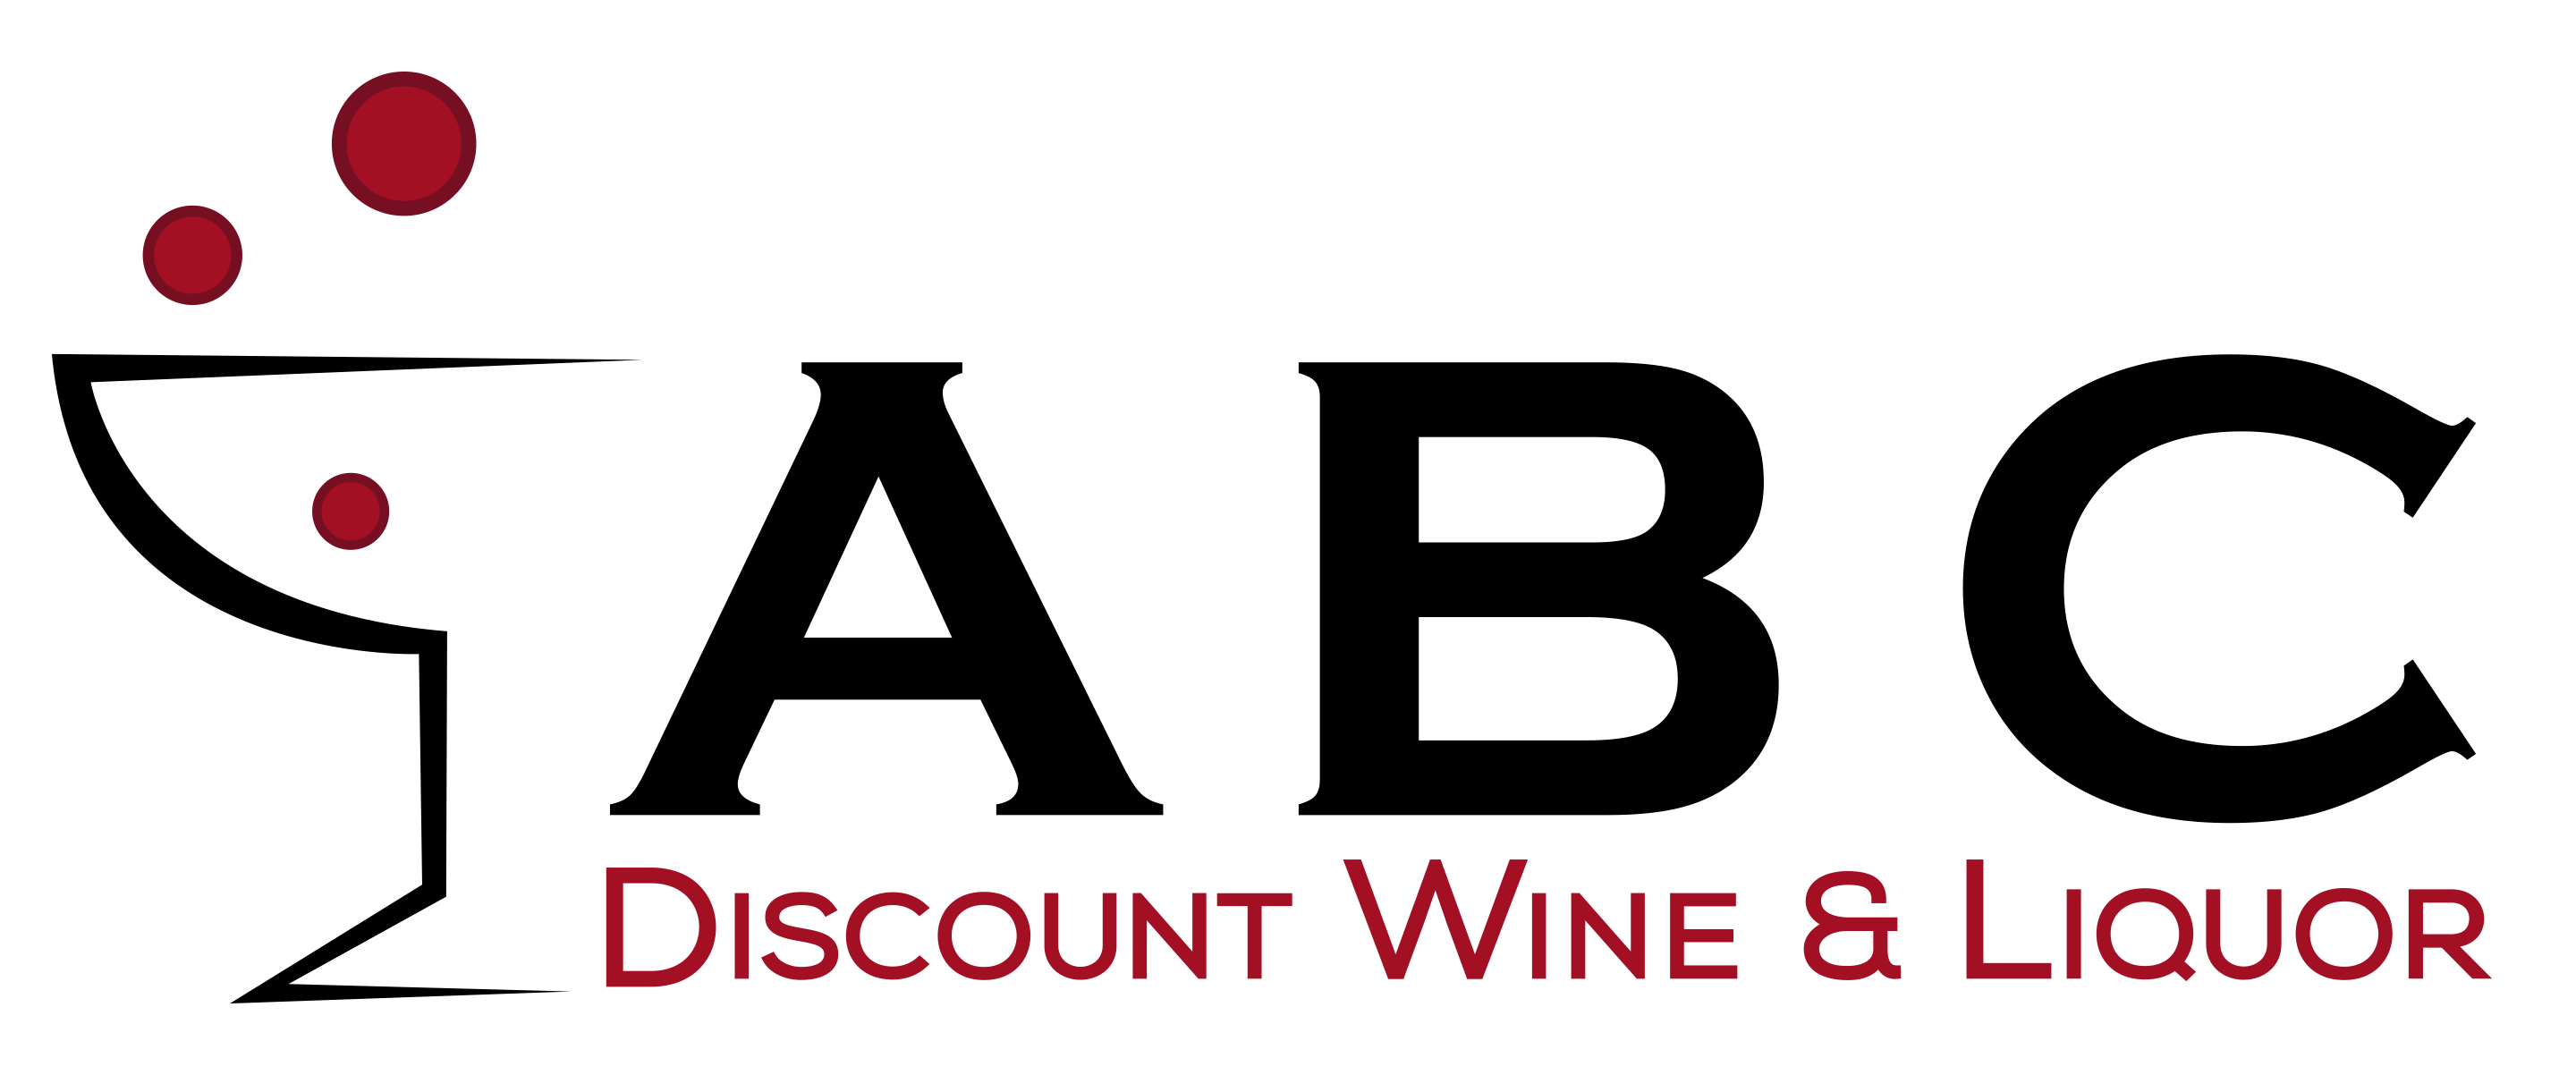 All Liquor Logo - Abc liquor store Logos